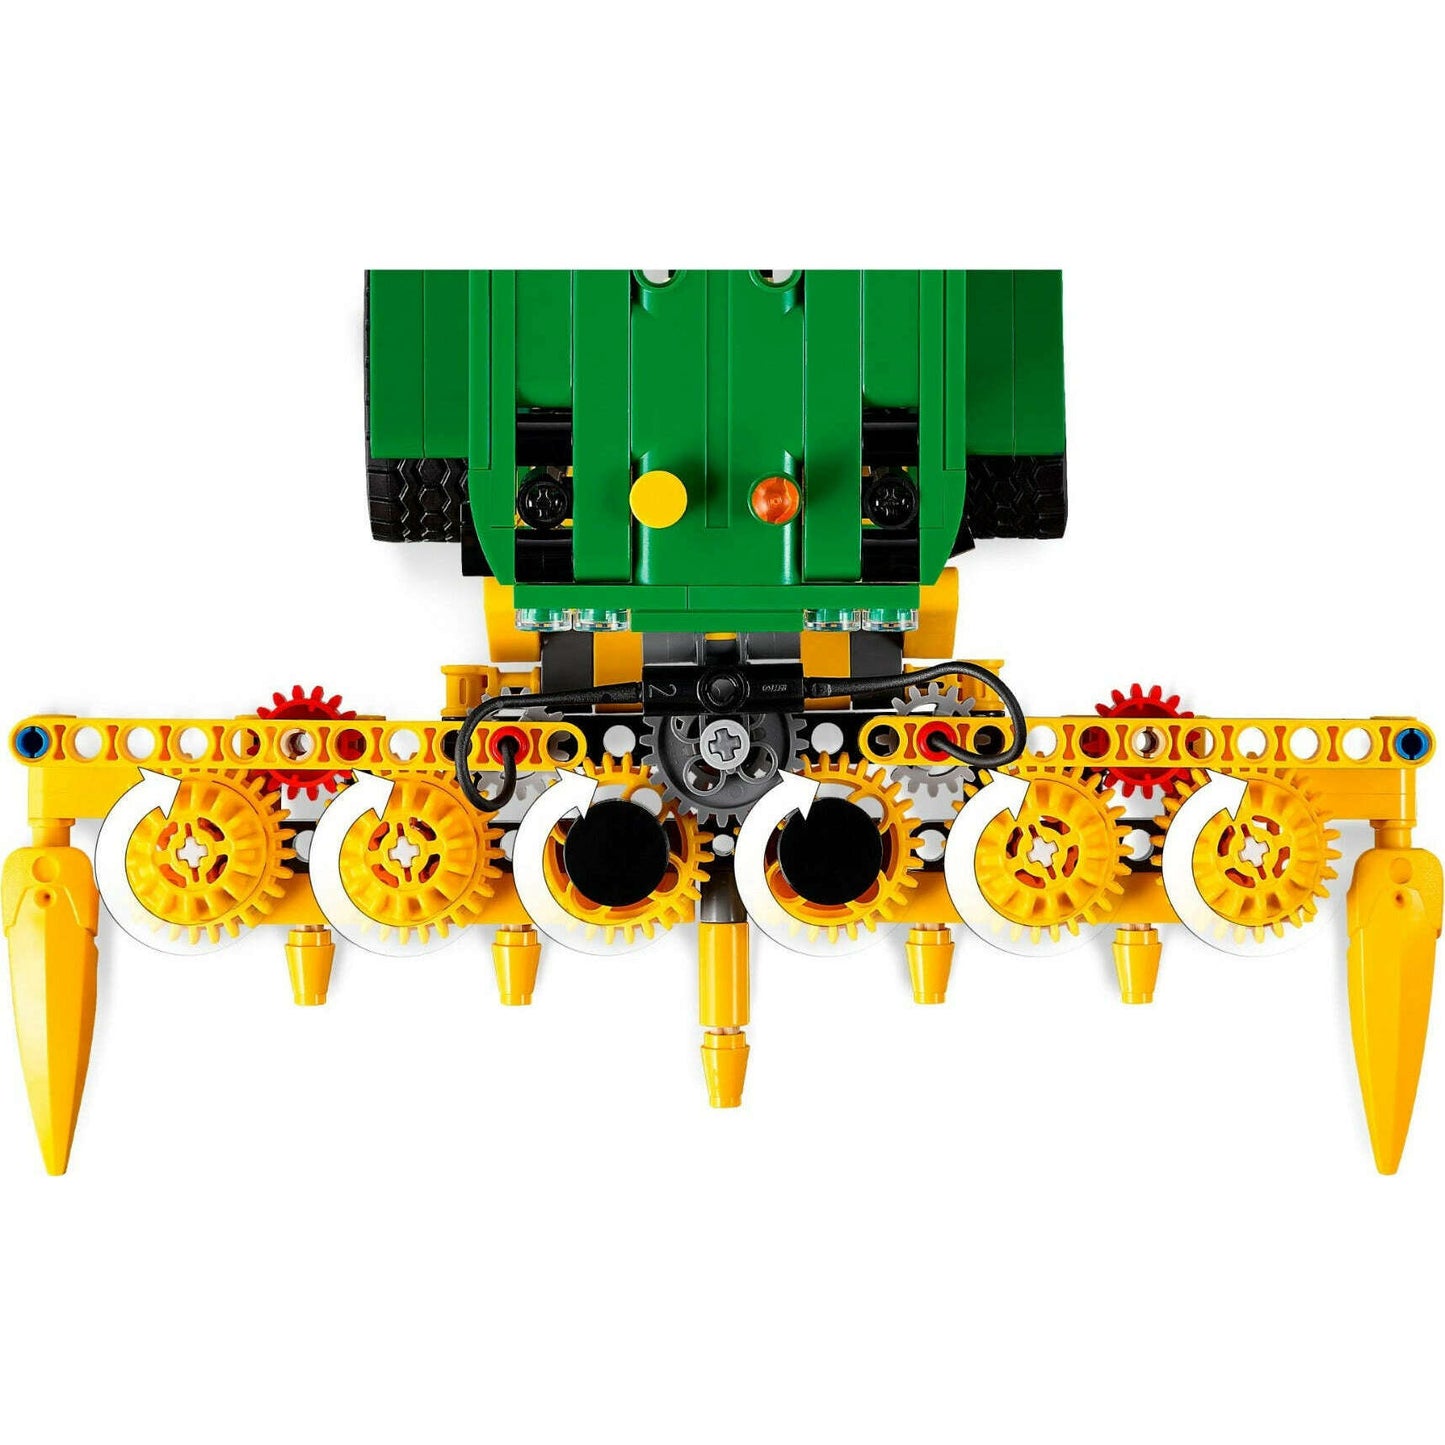 Toys N Tuck:Lego 42168 Technic John Deere 9700 Forage Harvester,Lego Technic